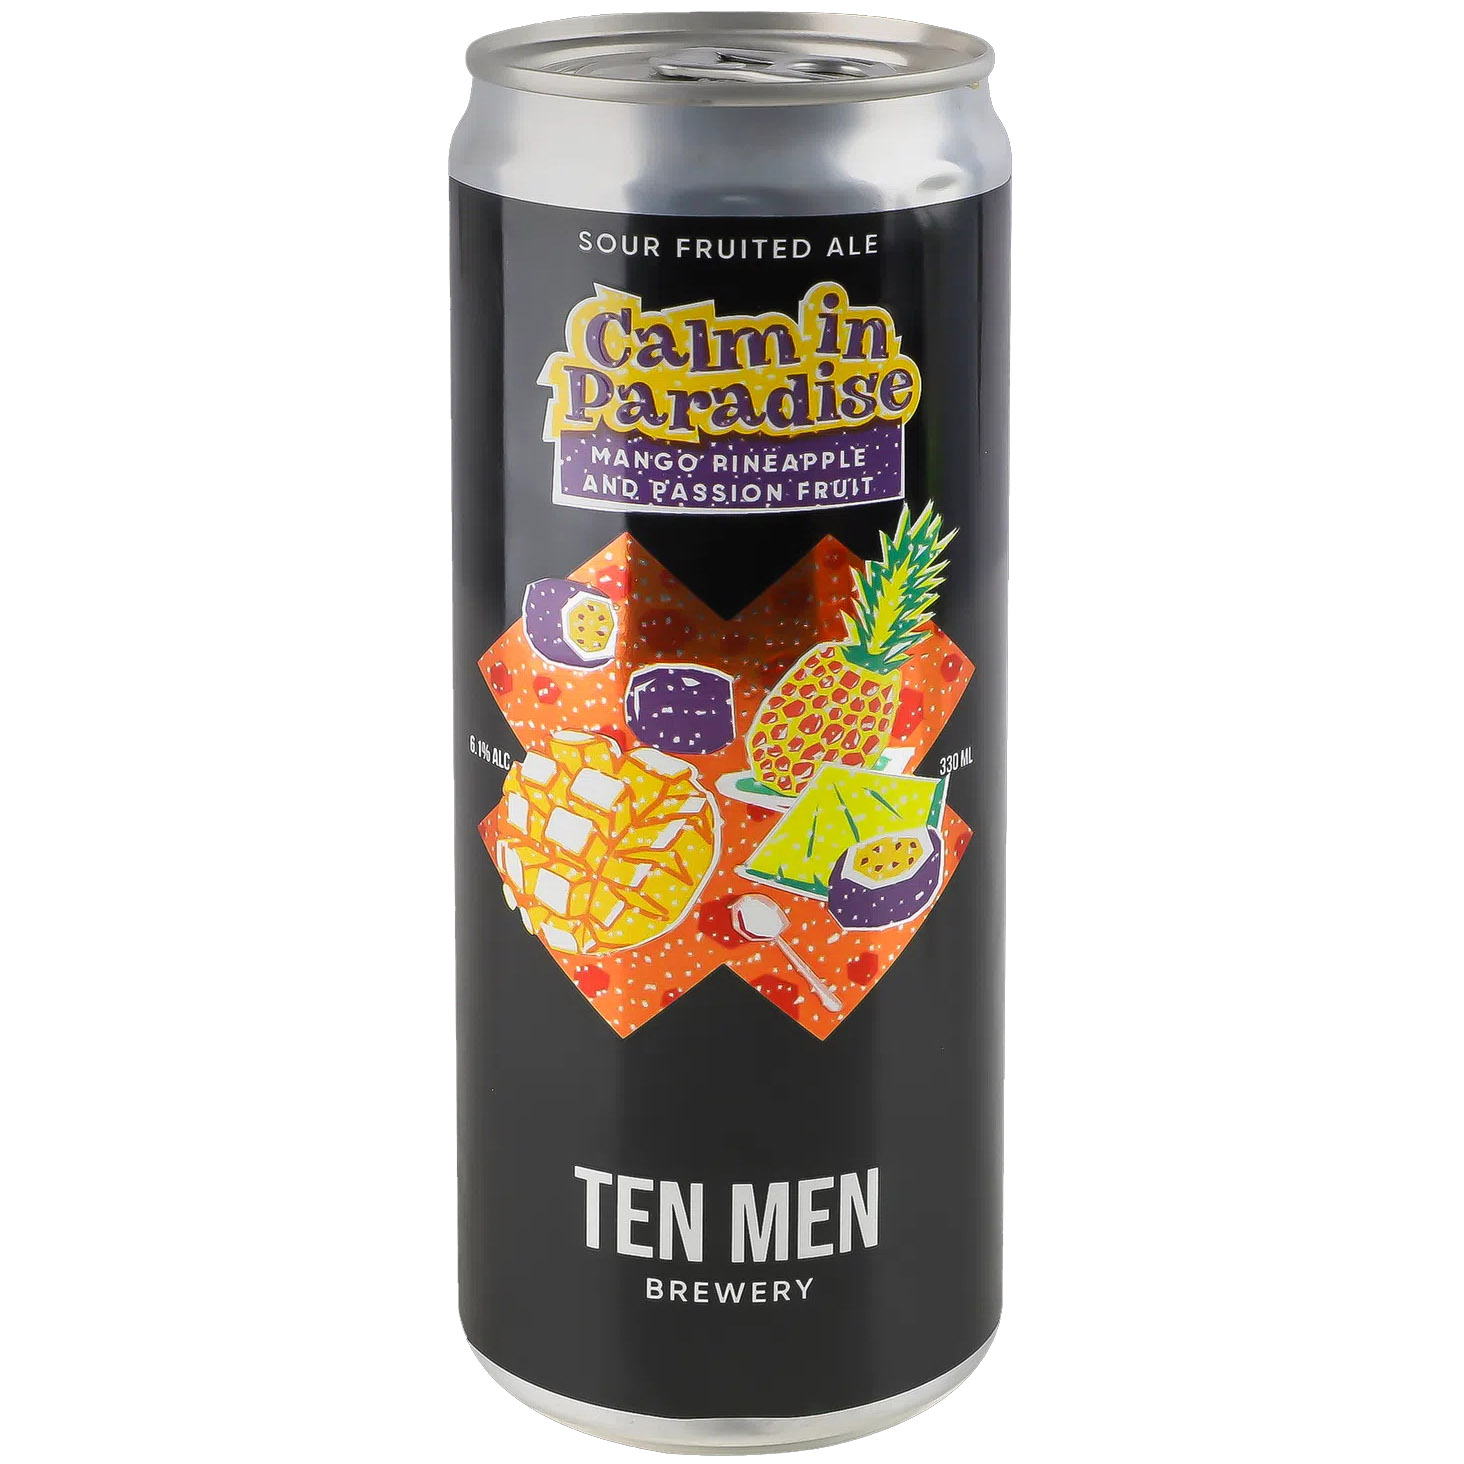 Пиво Ten Men Brewery Calm in Paradise Mango Pineapple and Passion Fruit светлое 6.1% 0.33 л ж/б - фото 1